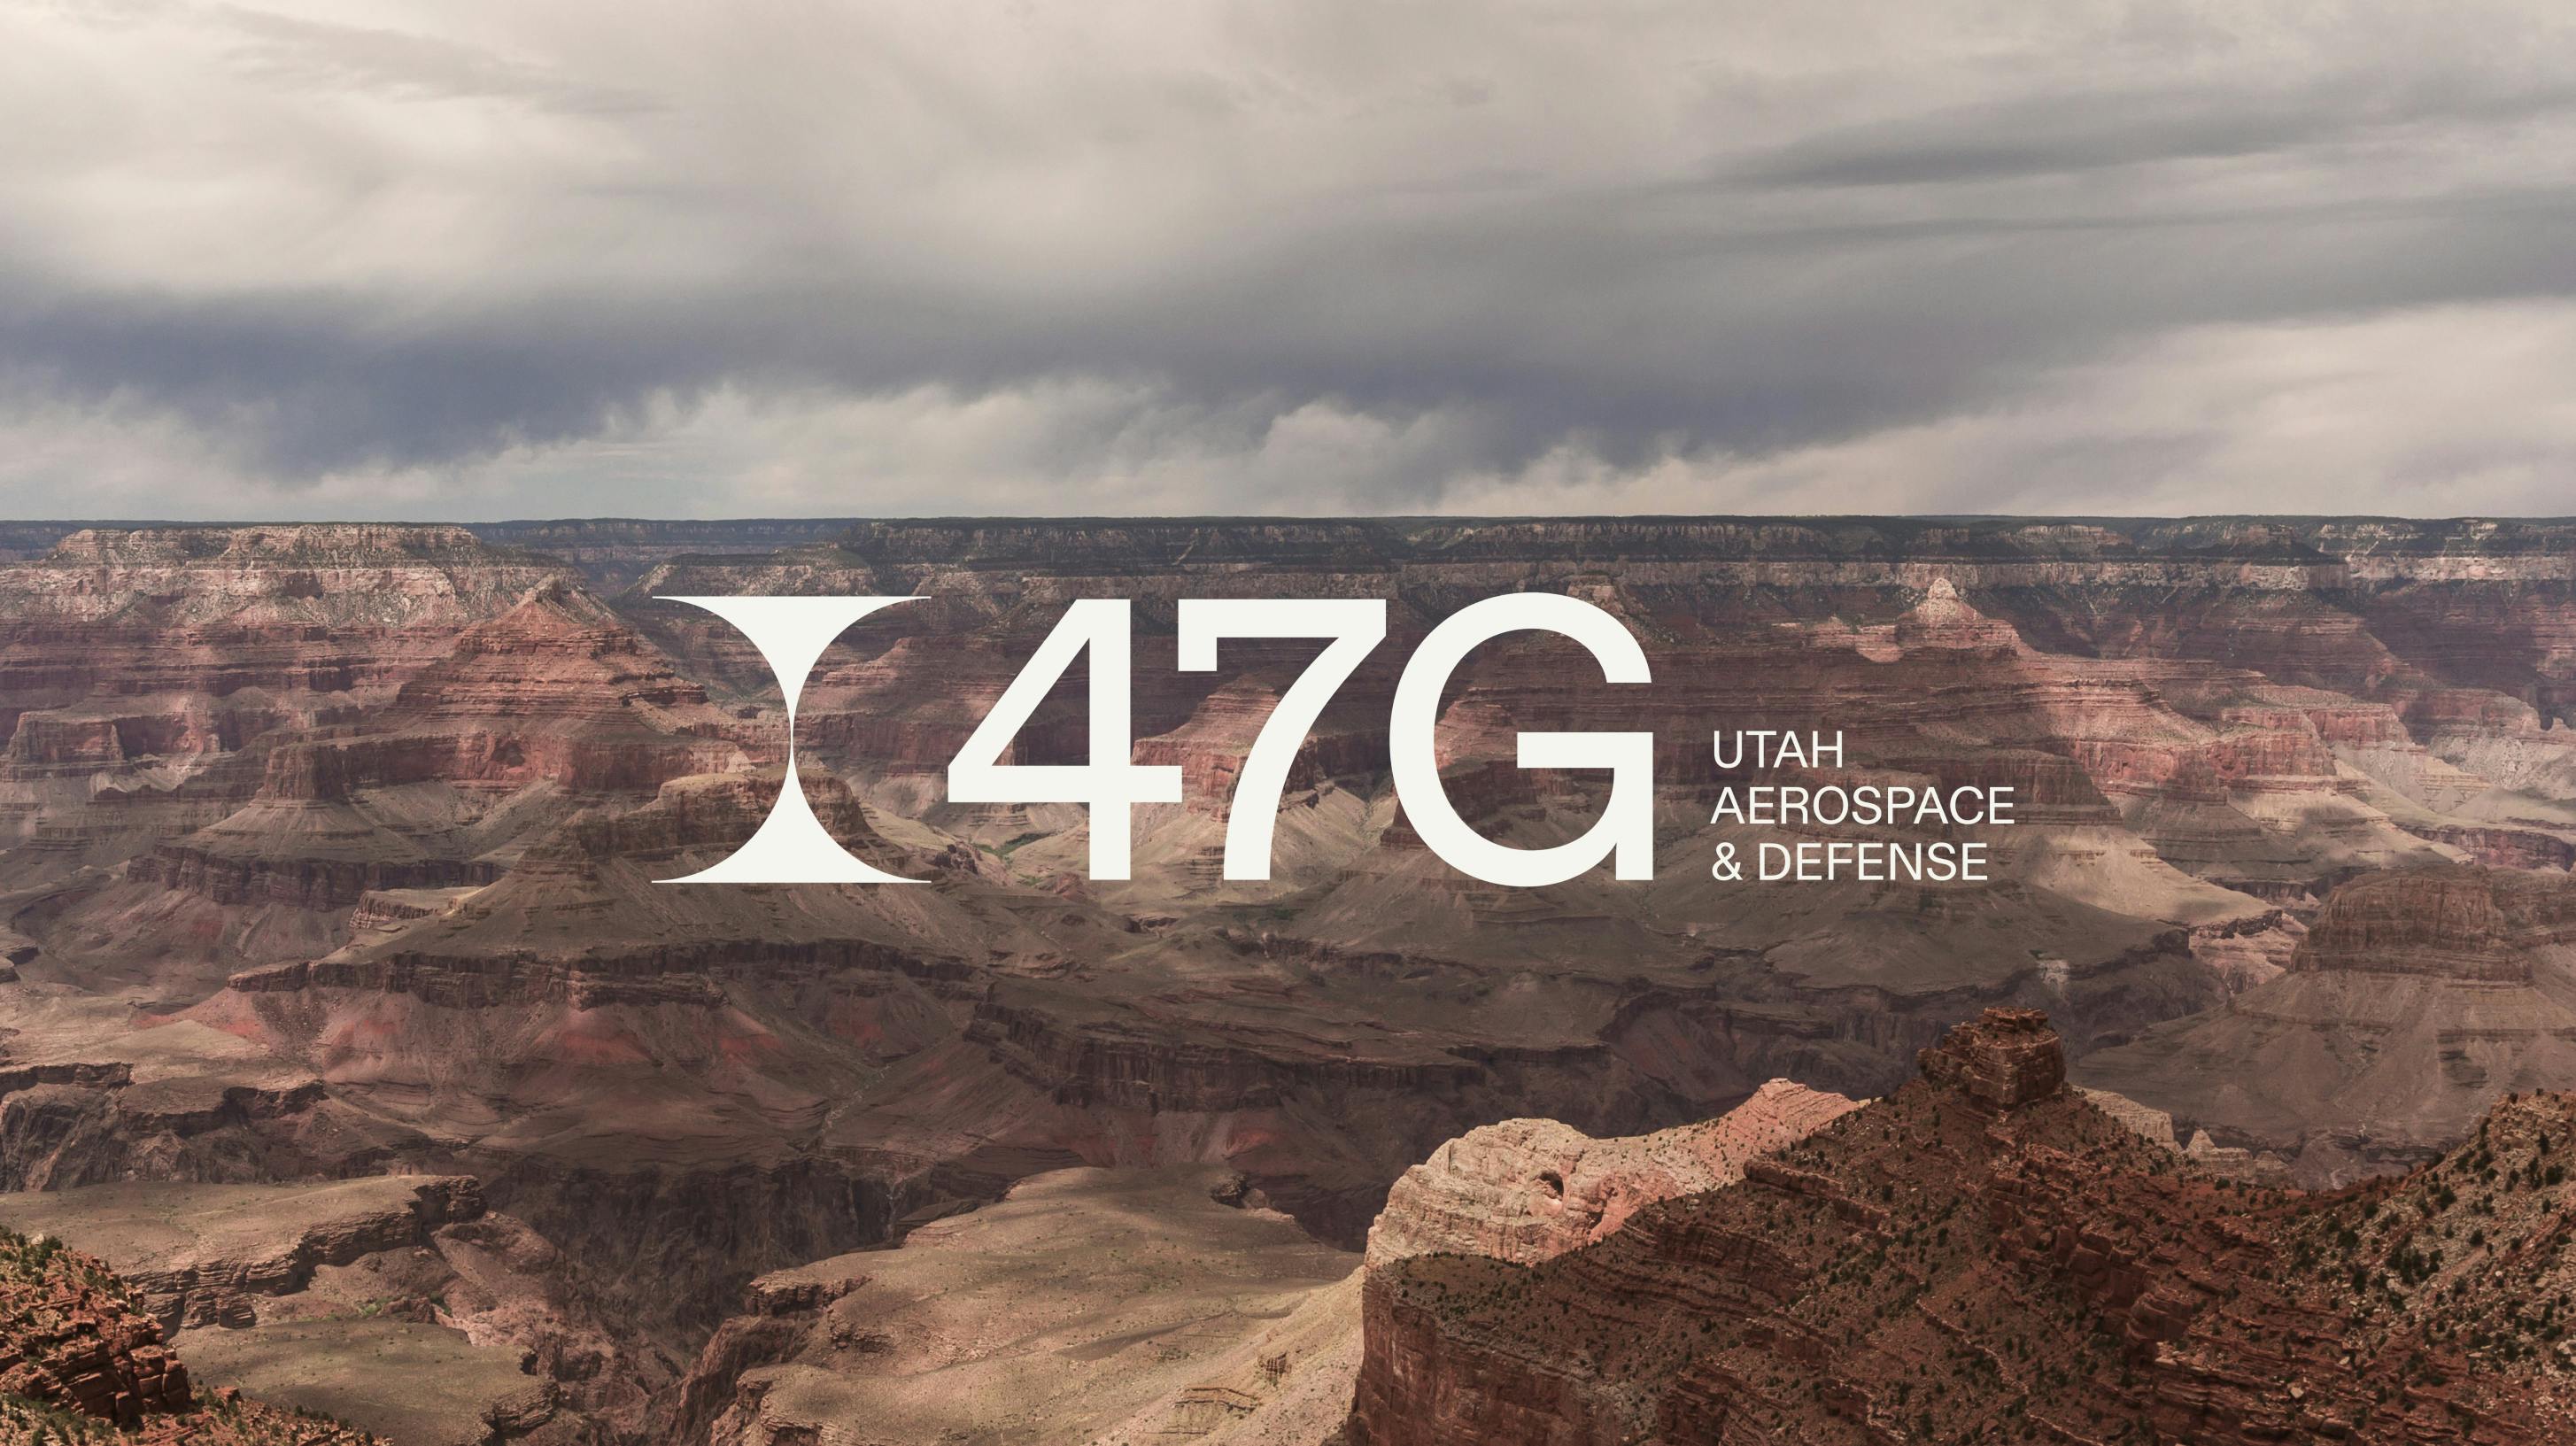 The 47G logo on top of a desert scene.